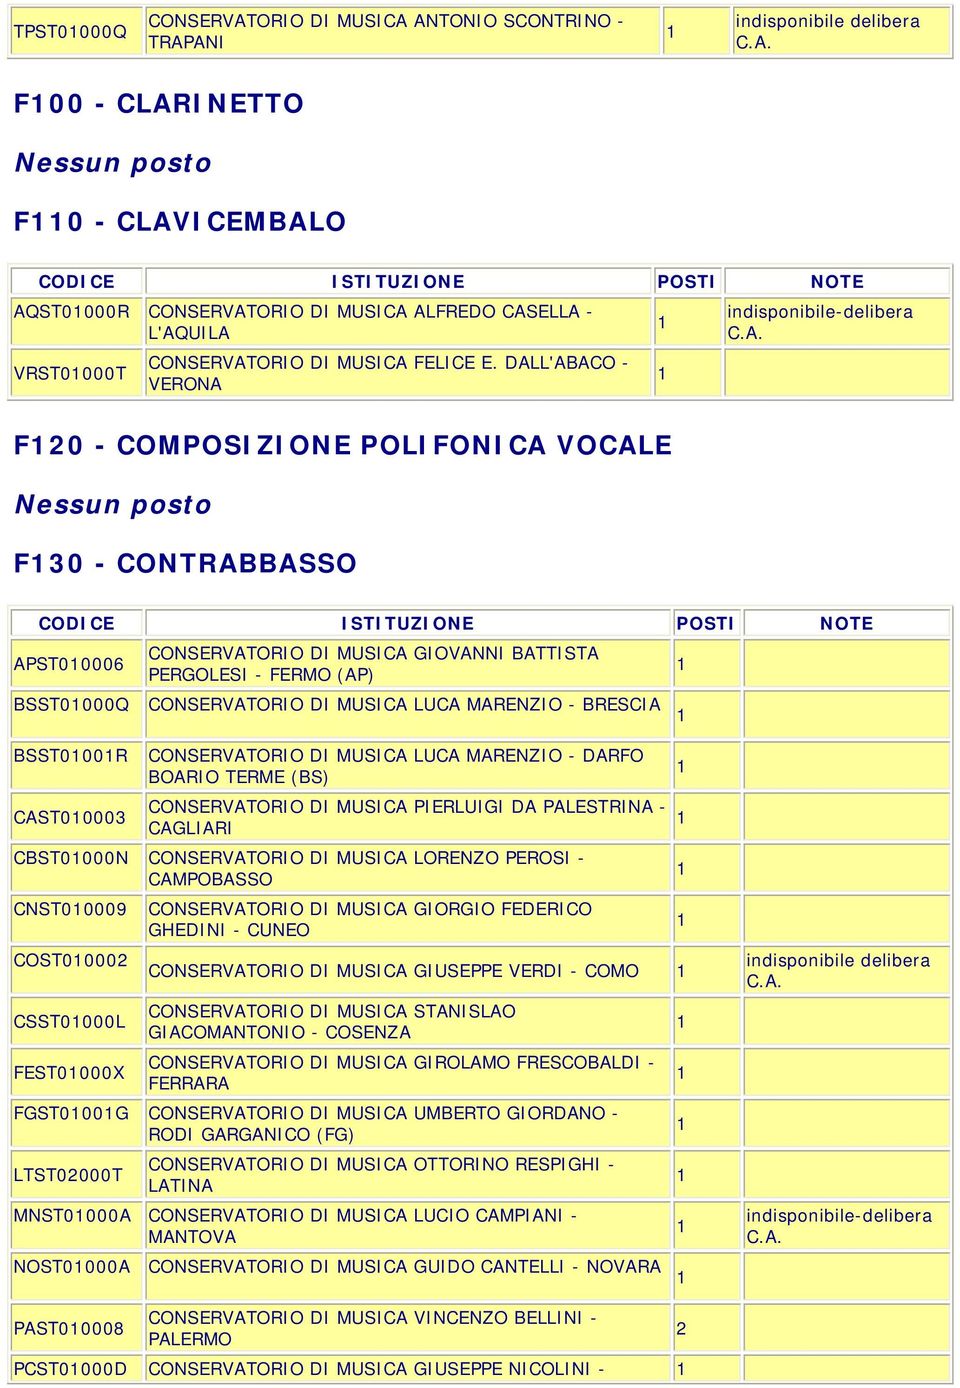 MARENZIO - BRESCIA BSST000R CAST00003 CONSERVATORIO DI MUSICA LUCA MARENZIO - DARFO BOARIO TERME (BS) CONSERVATORIO DI MUSICA PIERLUIGI DA PALESTRINA - CAGLIARI CBST0000N CONSERVATORIO DI MUSICA